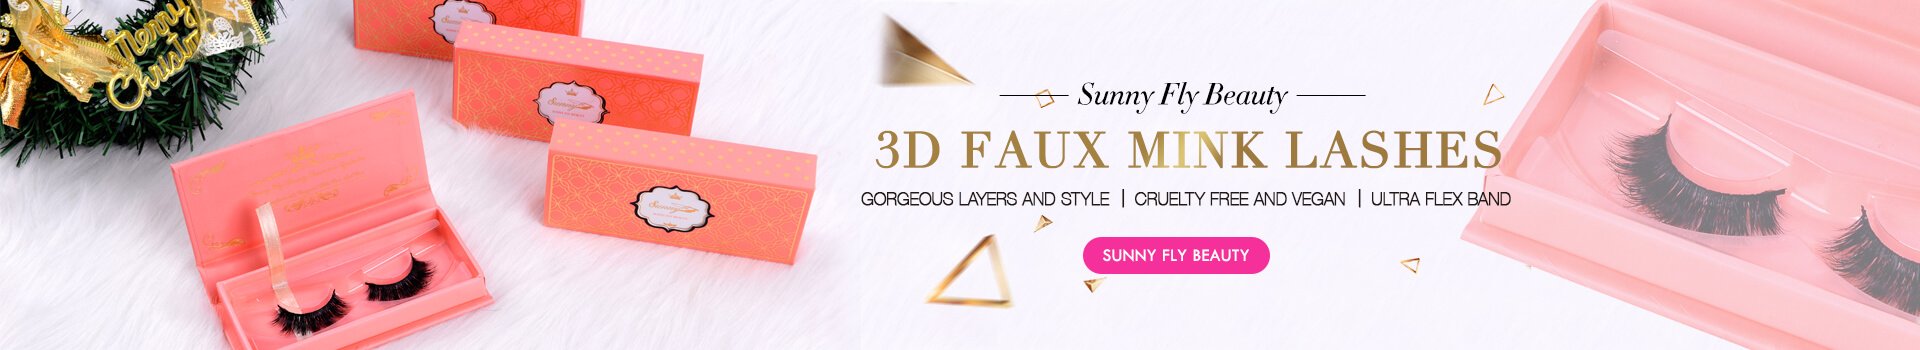 3D Faux Mink Lashes SD37